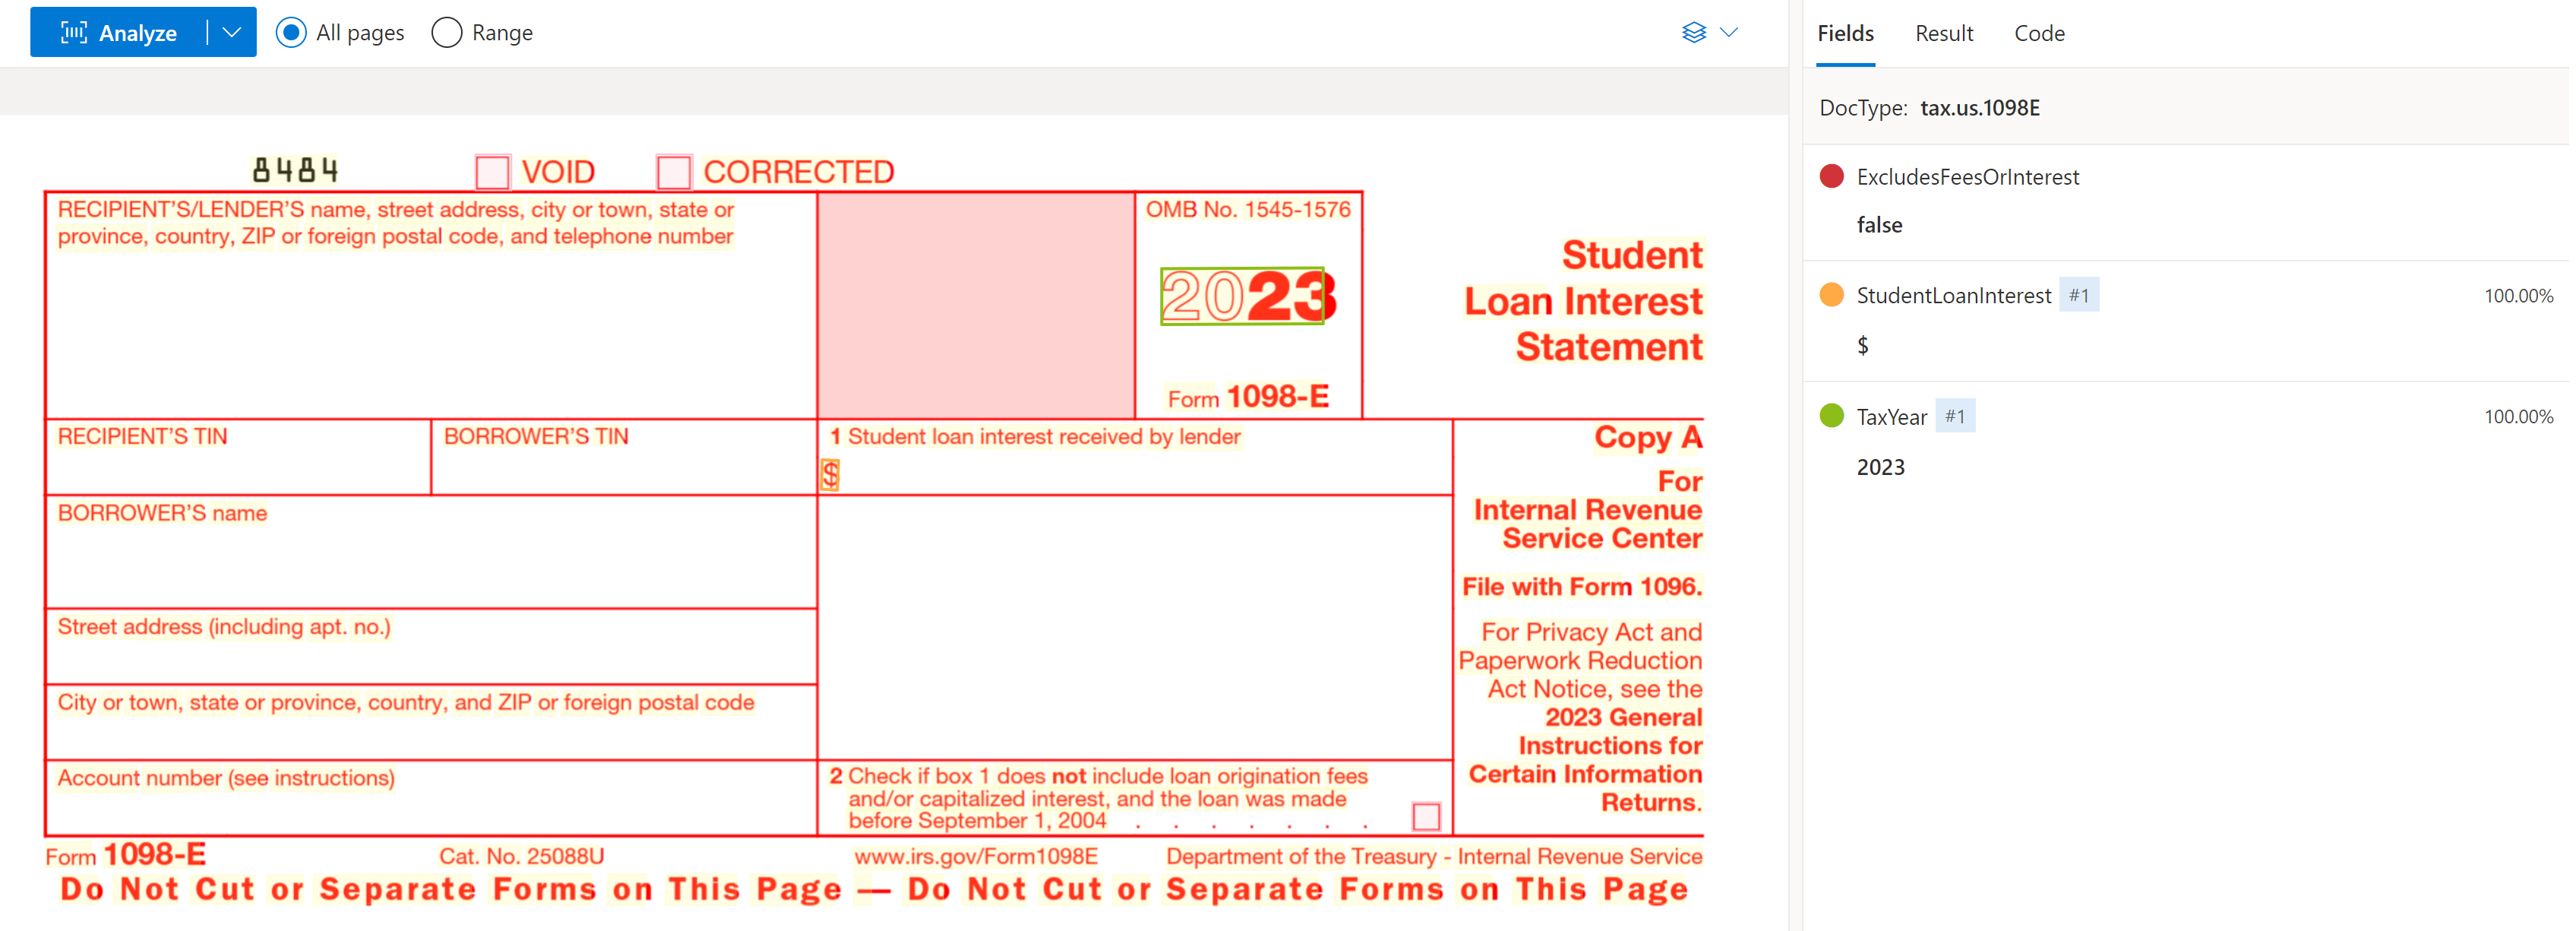 Cuplikan layar formulir pajak US 1098-E yang dianalisis di Studio Kecerdasan Dokumen.